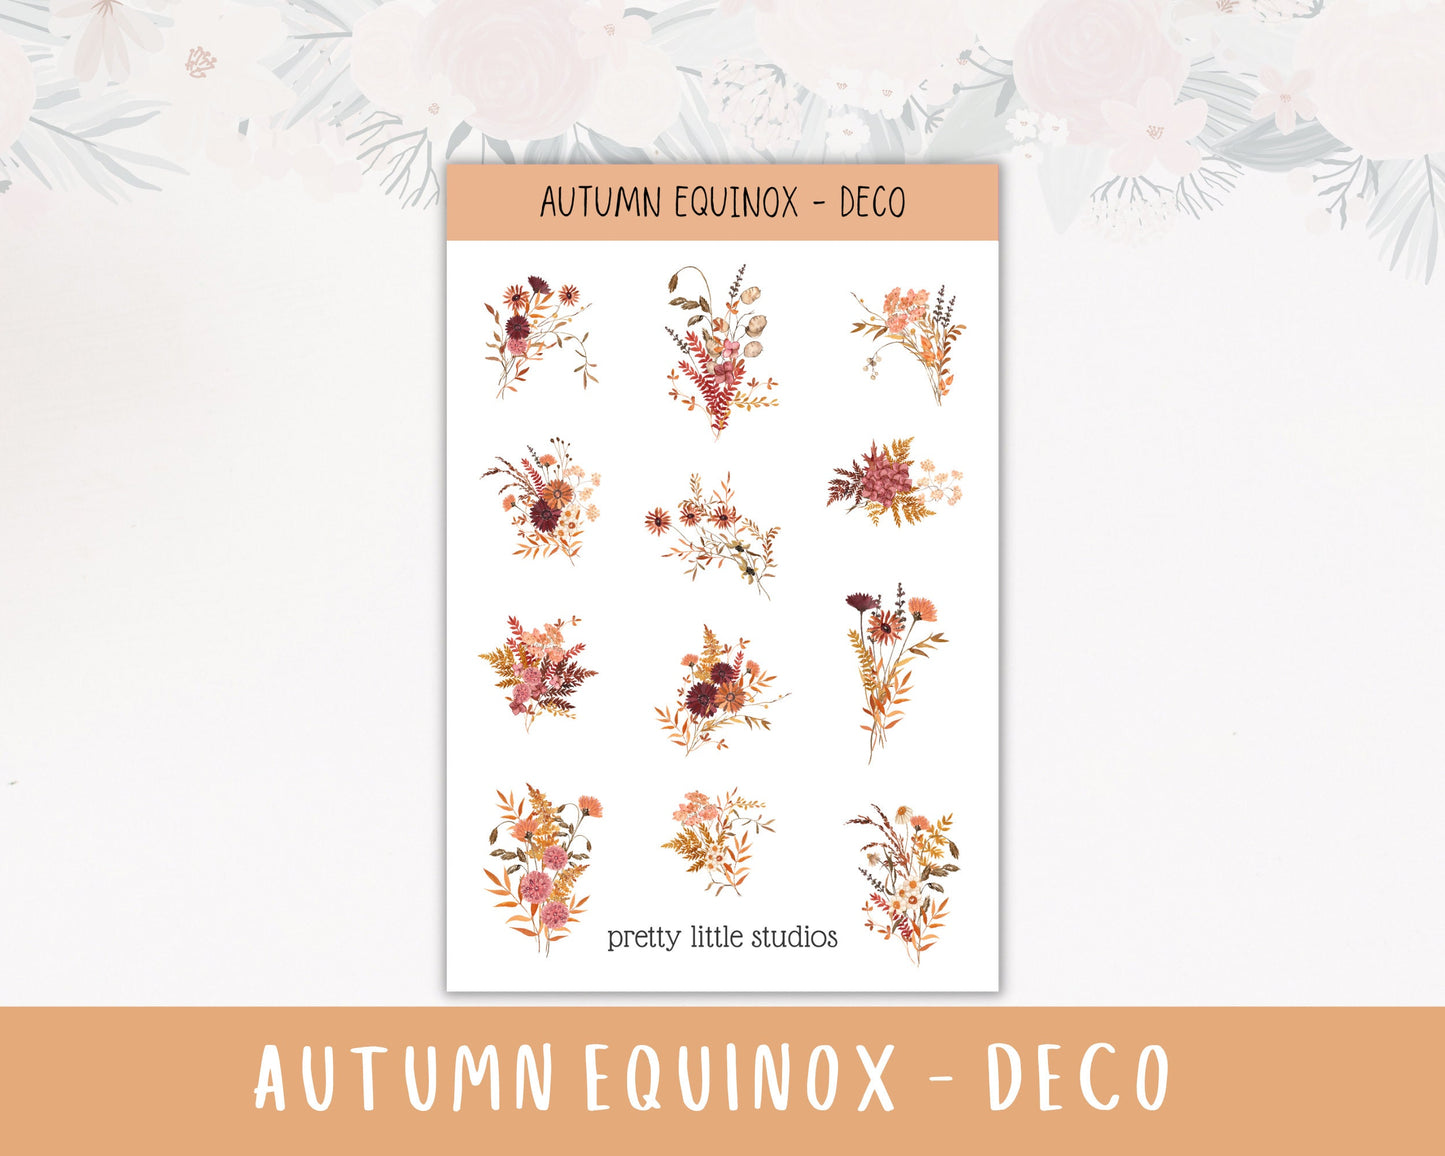 Autumn Equinox Happy Planner Sticker Kit - Standard Weekly Sticker Kit - Planner Stickers - Autumn Stickers Kit - Fall Stickers Kit